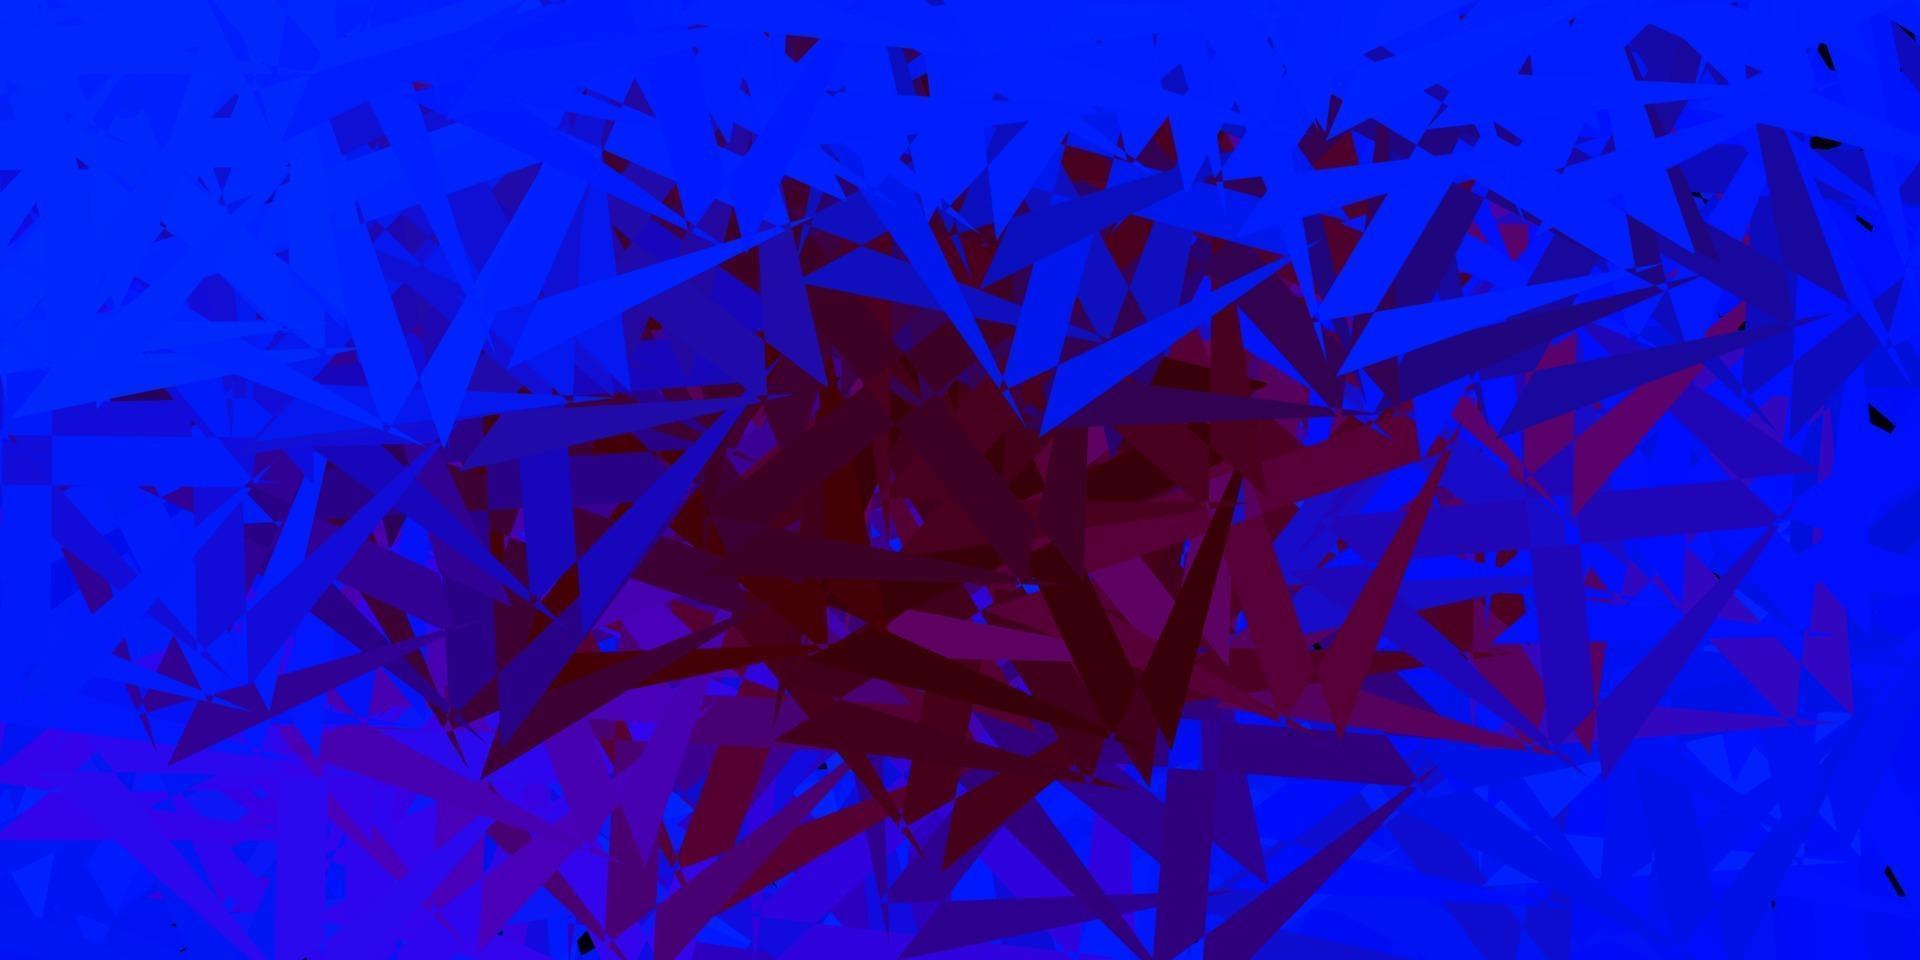 disposition de vecteur bleu foncé, rouge avec des formes triangulaires.